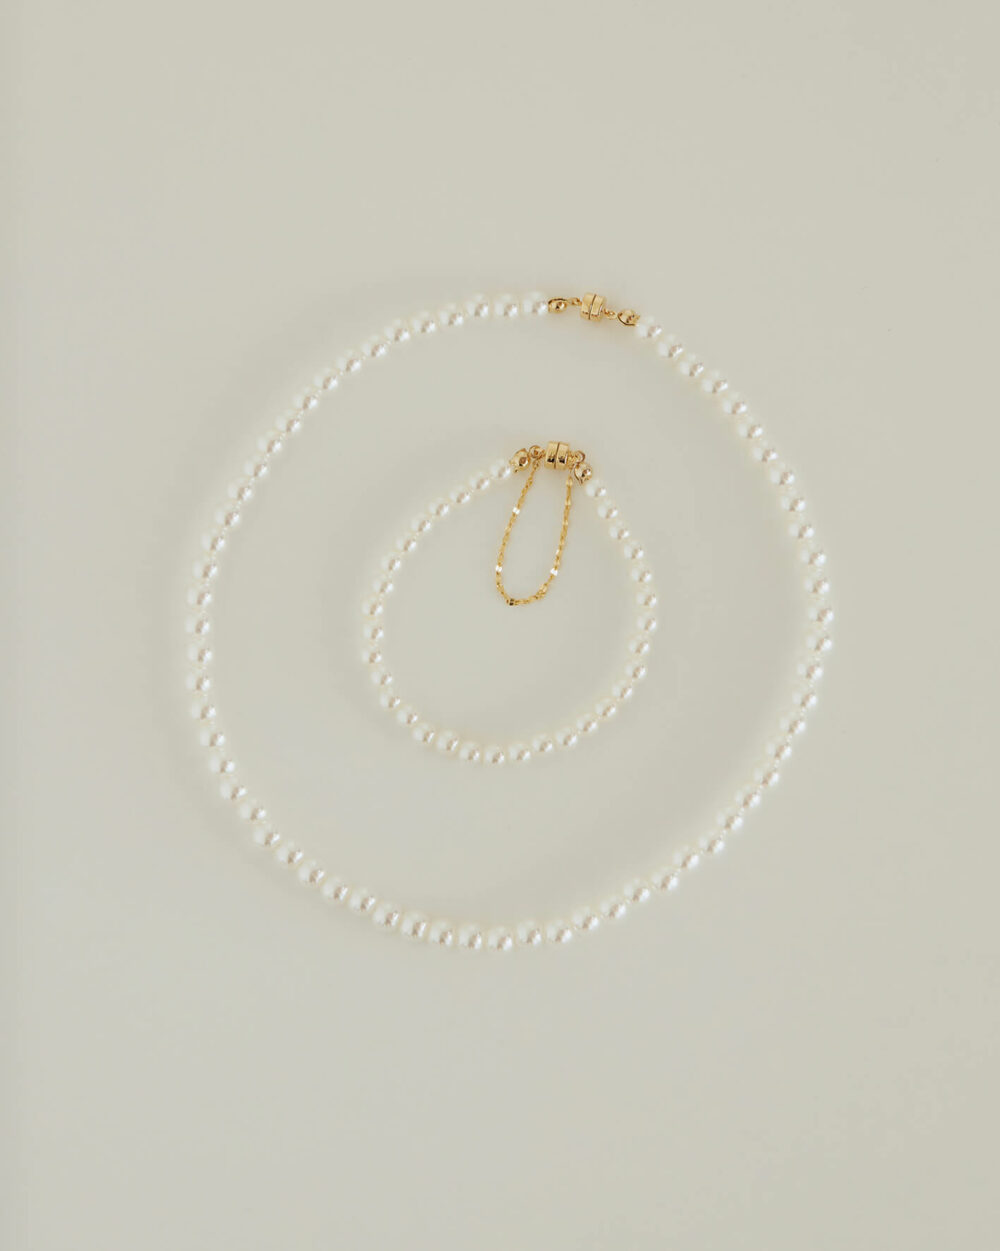 Eco安珂,韓國飾品,韓國項鏈,韓國項鍊,鎖骨項鏈,鎖骨項鍊,珍珠項鍊,珍珠項鏈,淡水珍珠項鍊,磁鐵項鍊,磁吸式項鍊